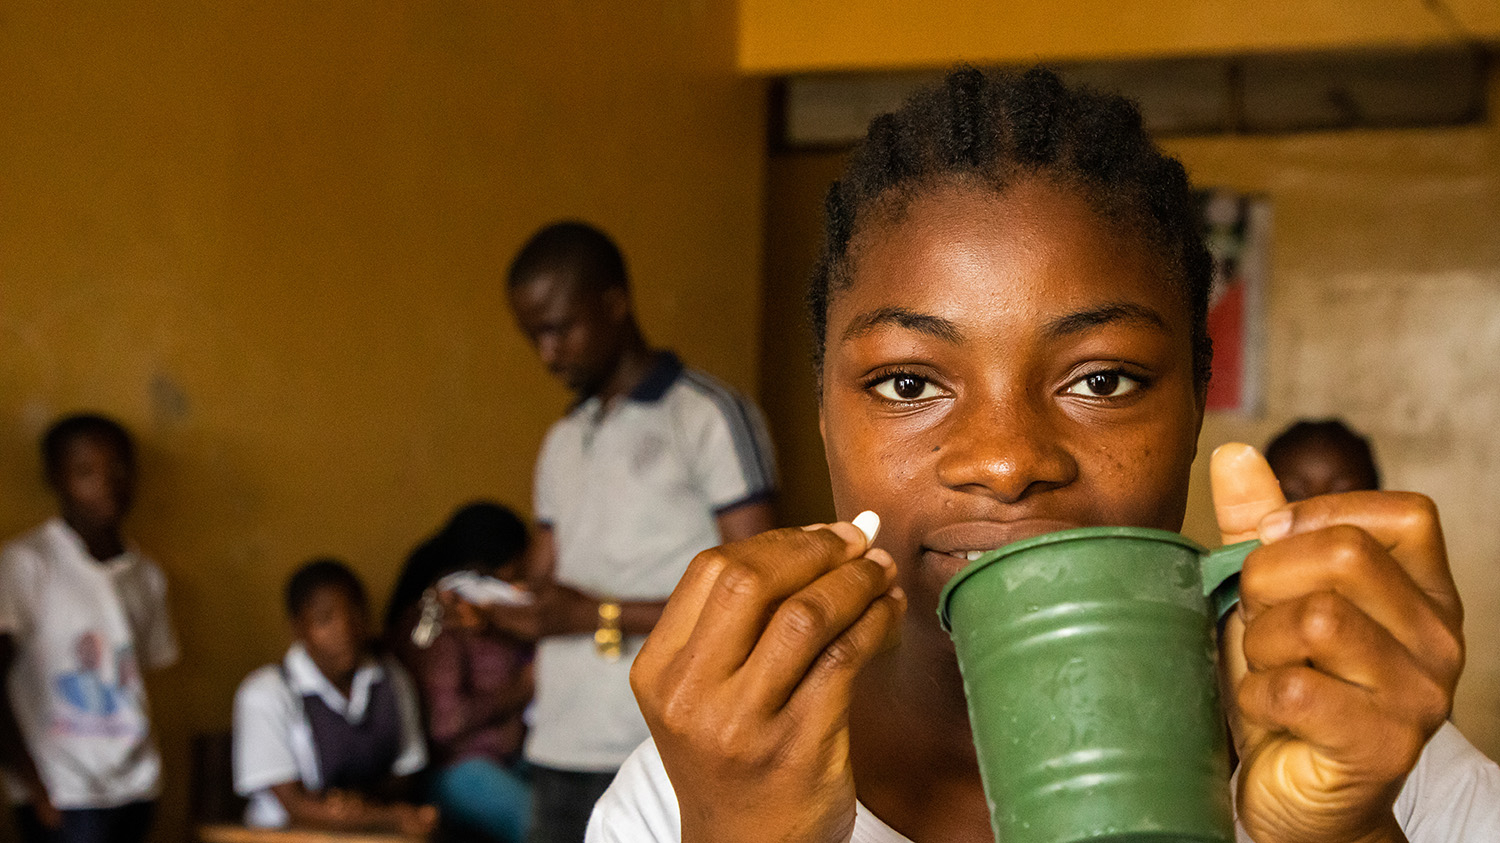 En jente på skolen holder en grønn kopp og et ormenettbrett, med klassekameratene i bakgrunnen.